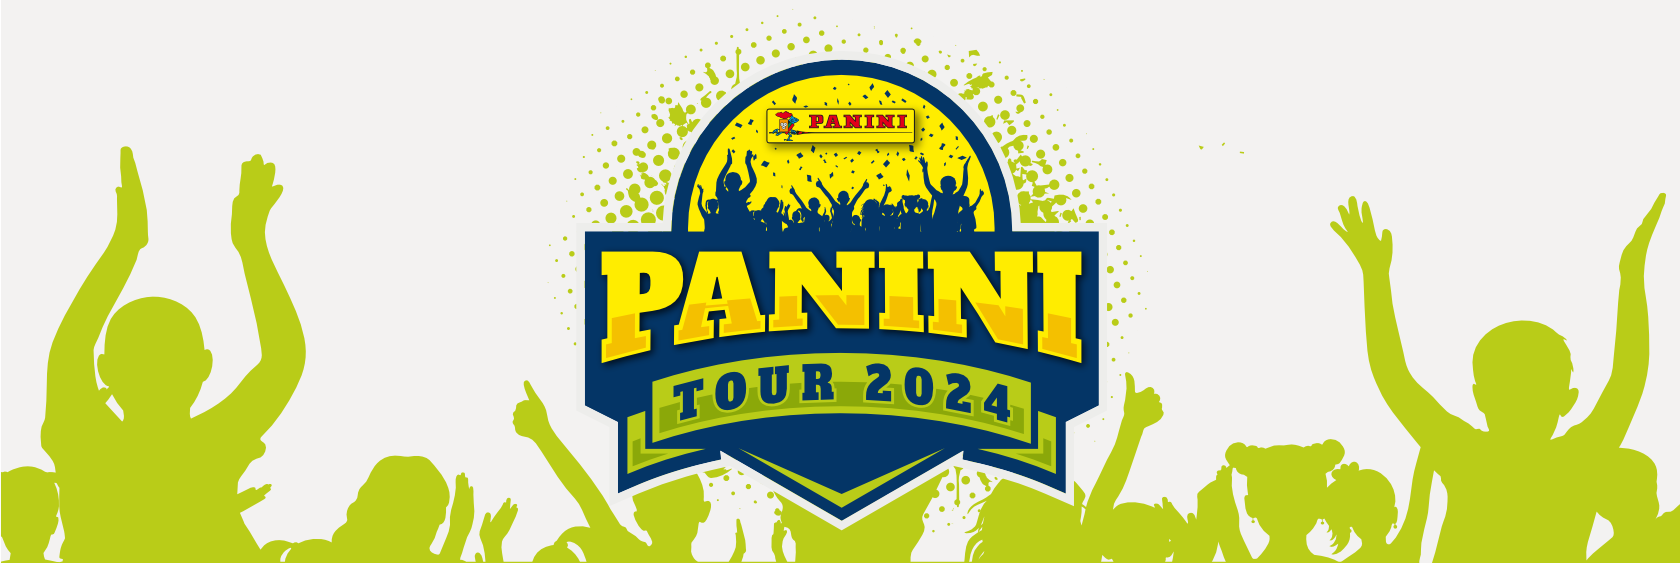 Panini Tour 2024